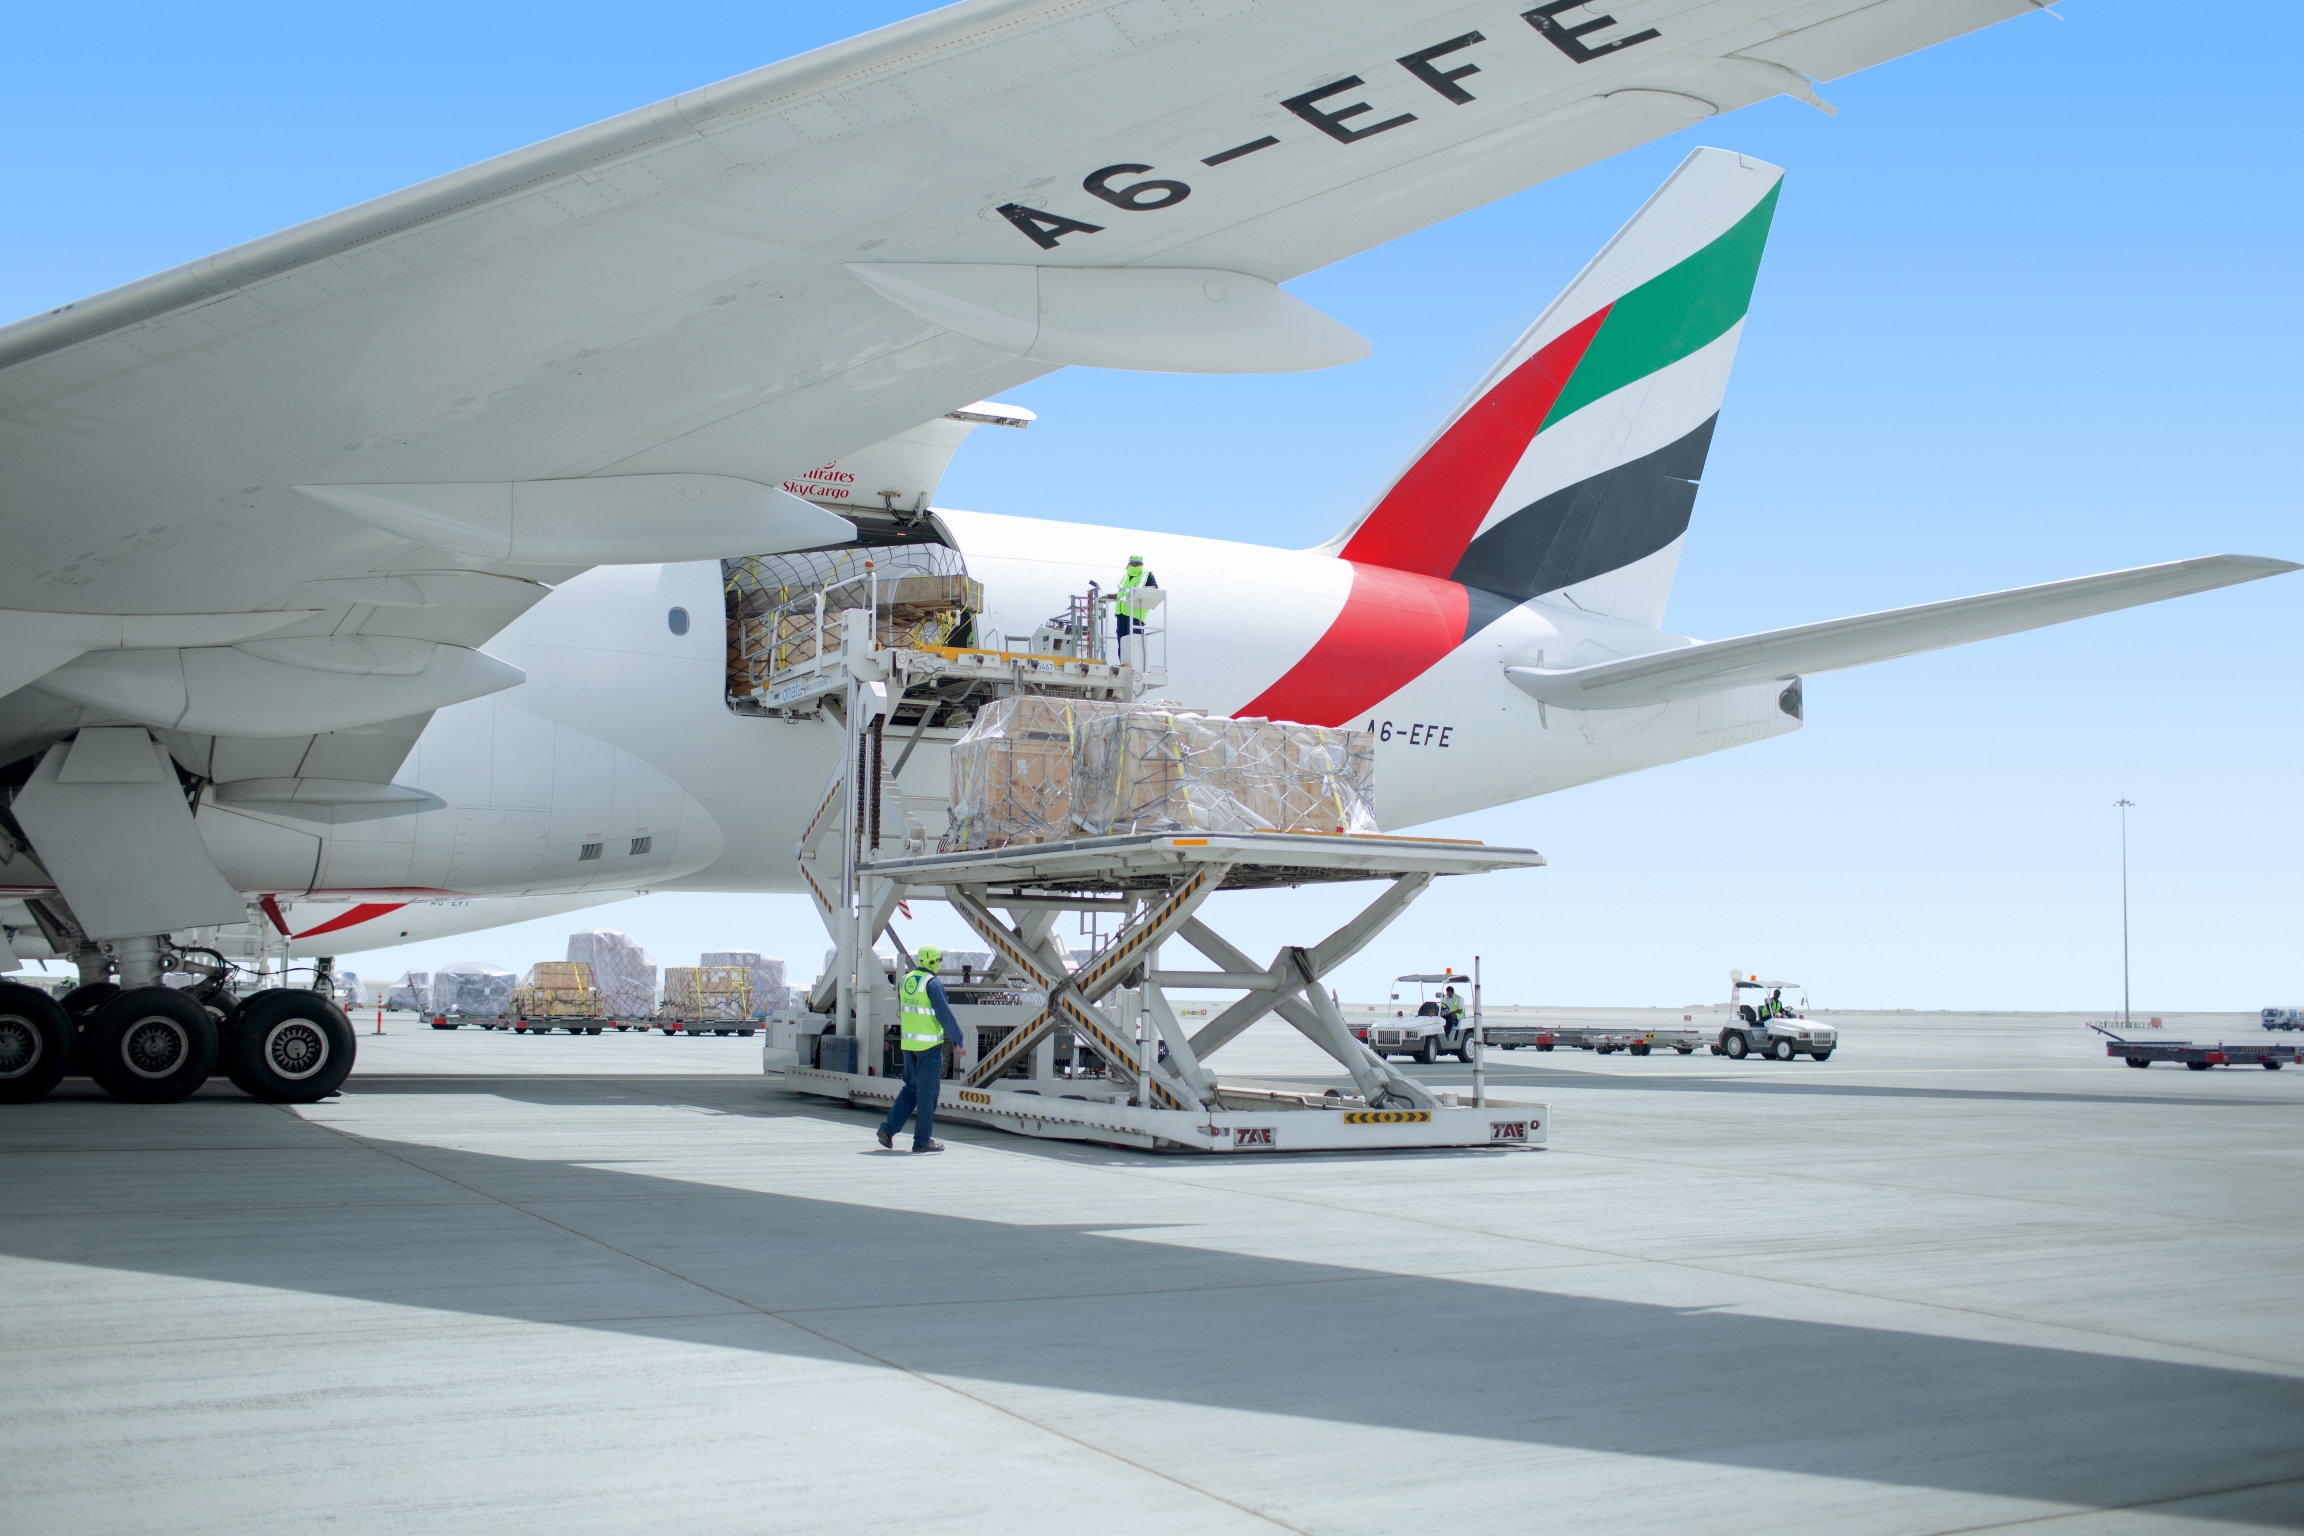 Az Emirates kilenc teherszállító repülőt küld Magyarországra április közepéig